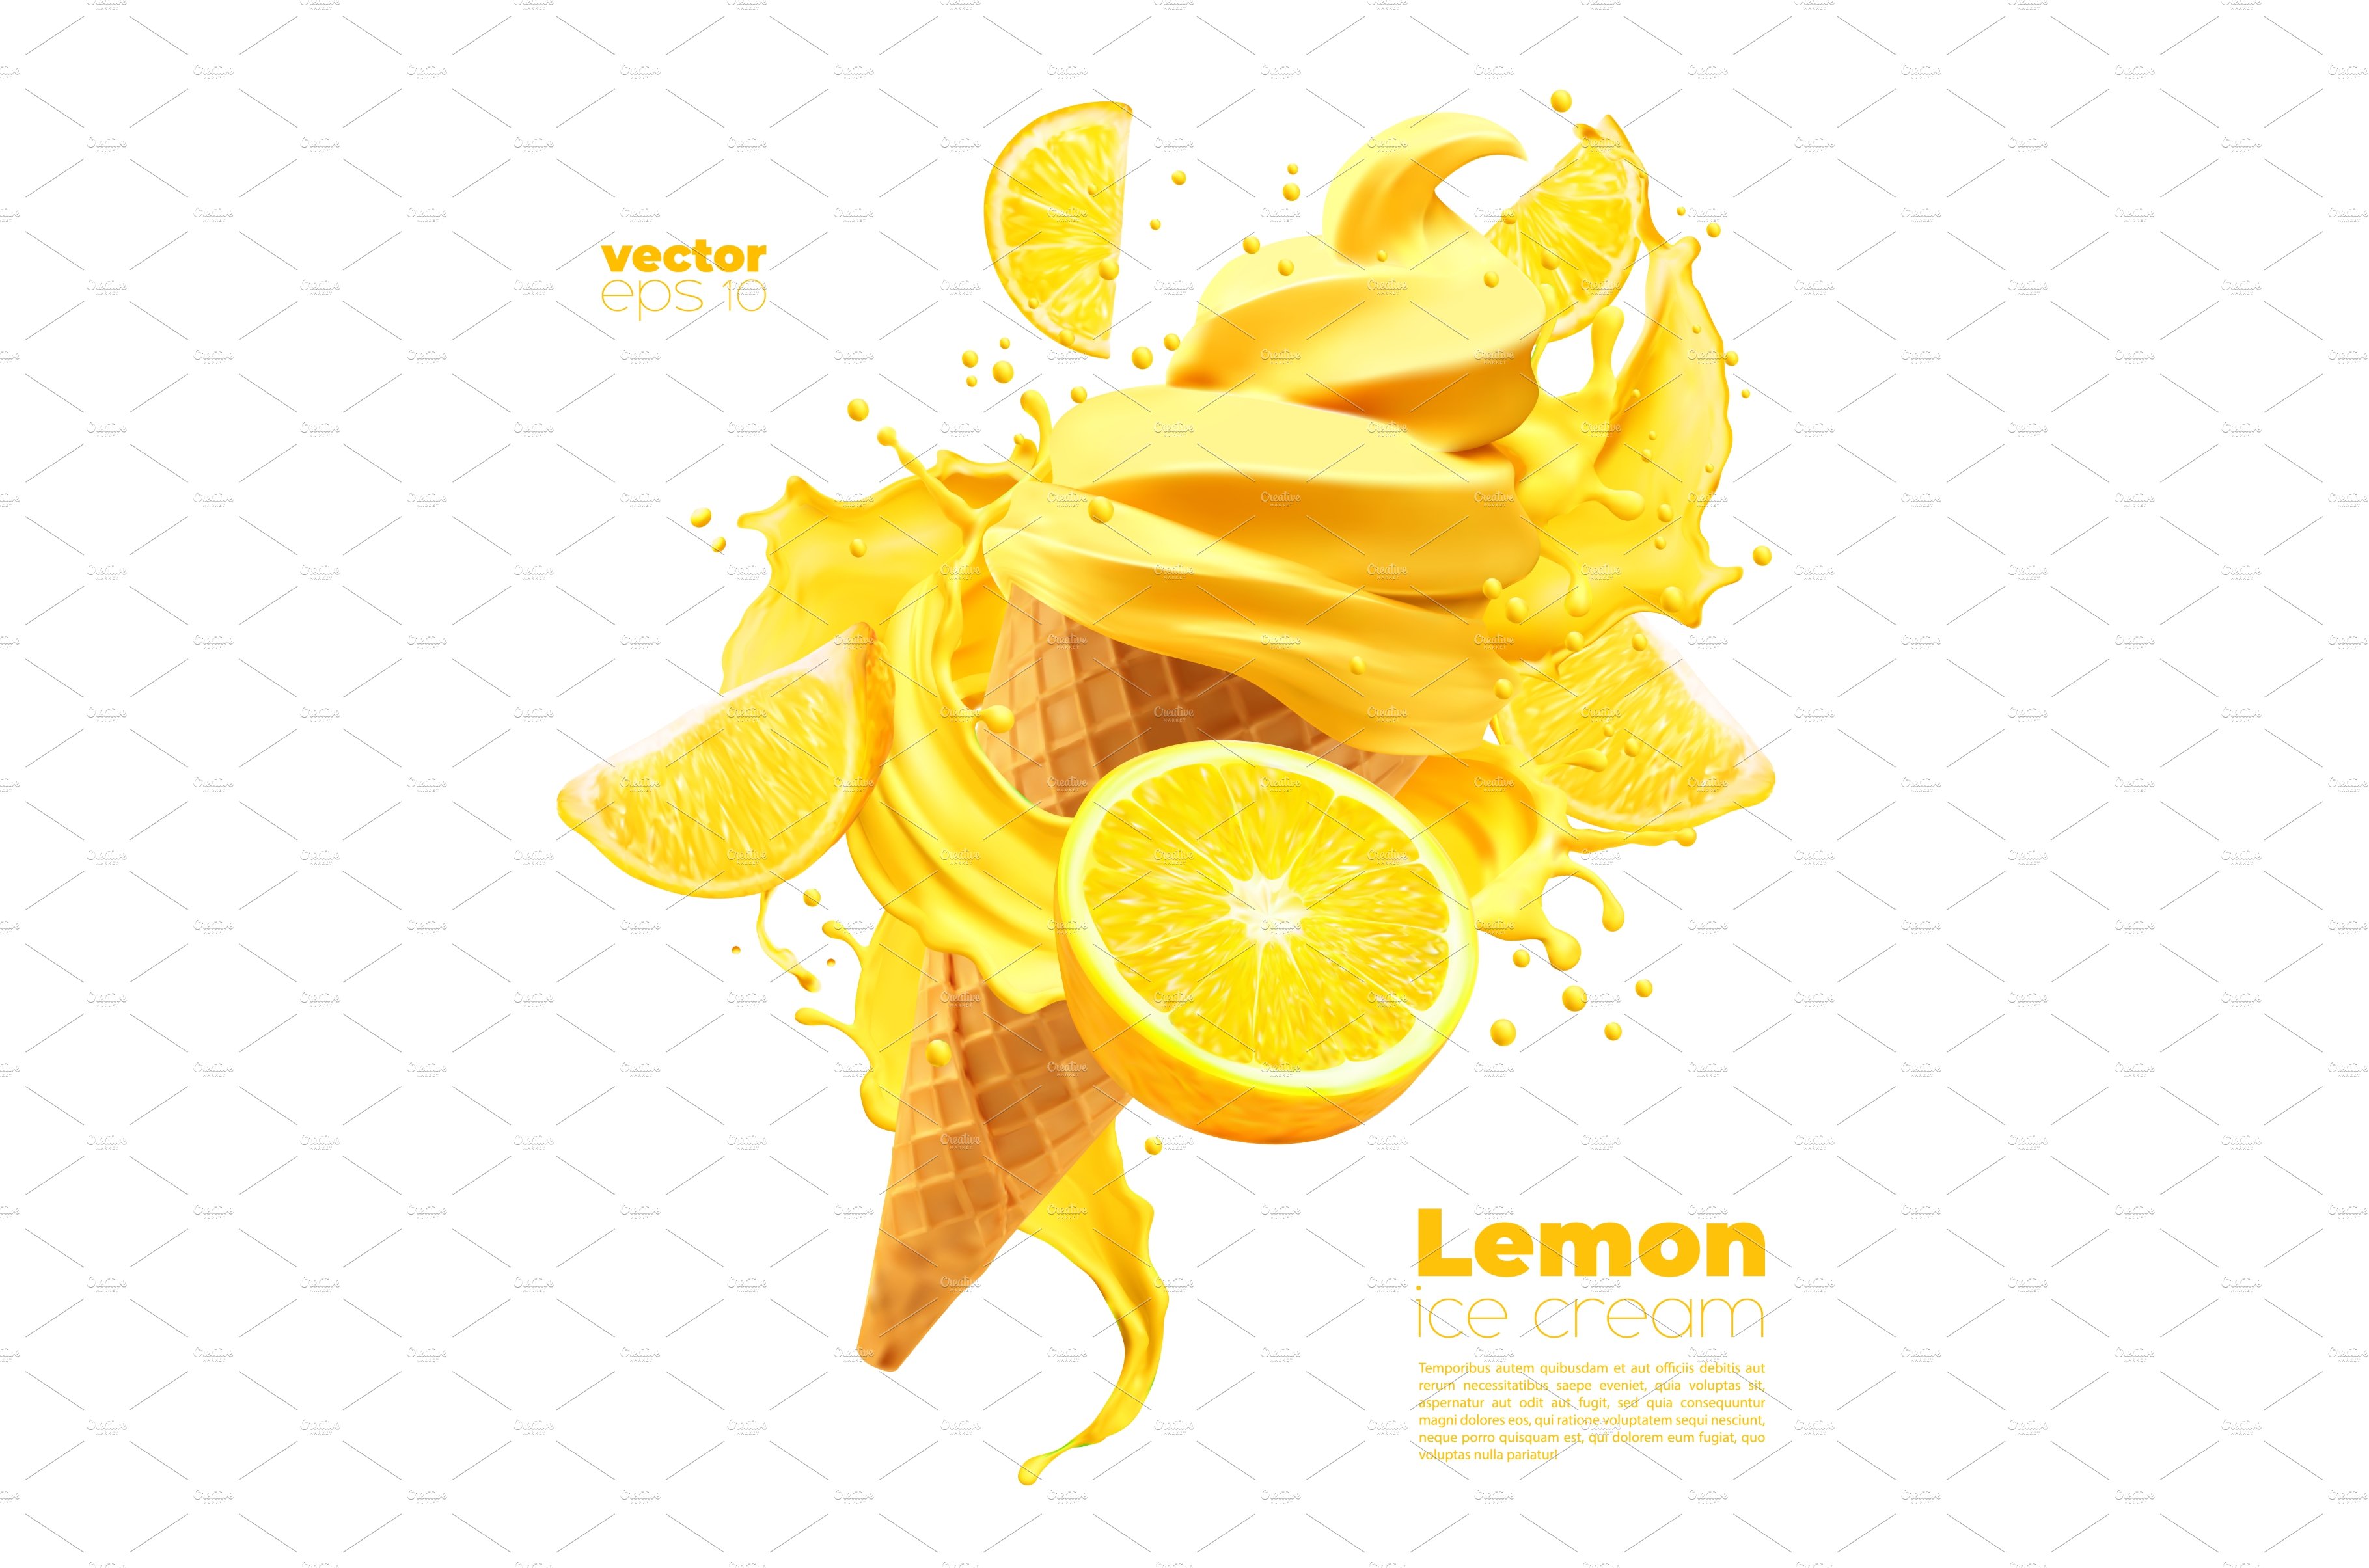 Isolated lemon soft ice cream cover image.